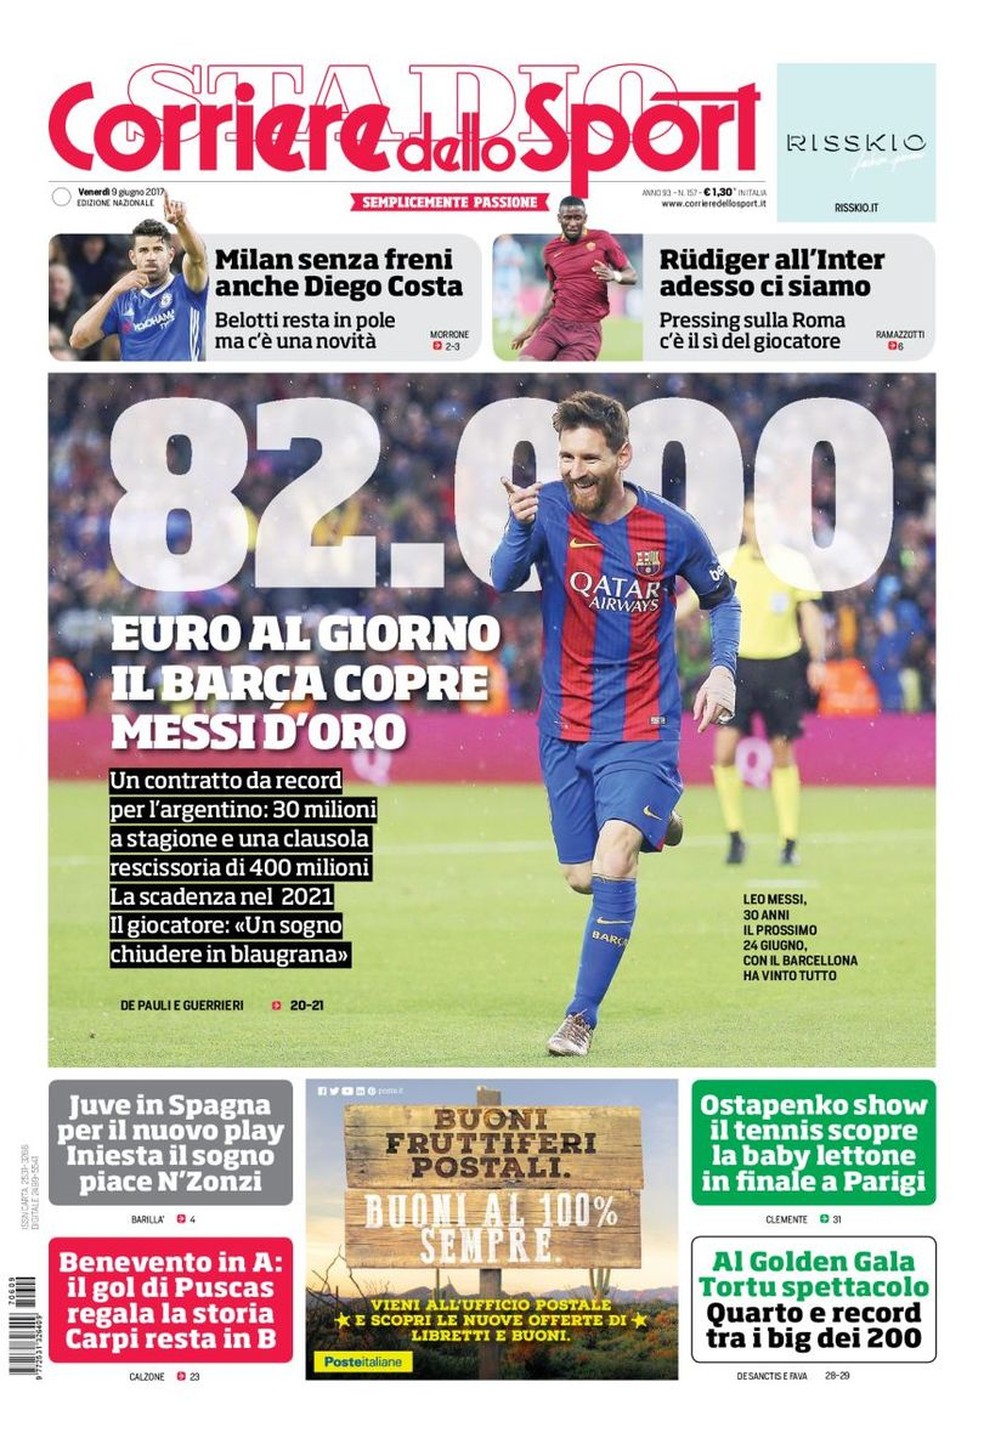 Capa do jornal Corriere dello Sport (Foto: Reprodução)